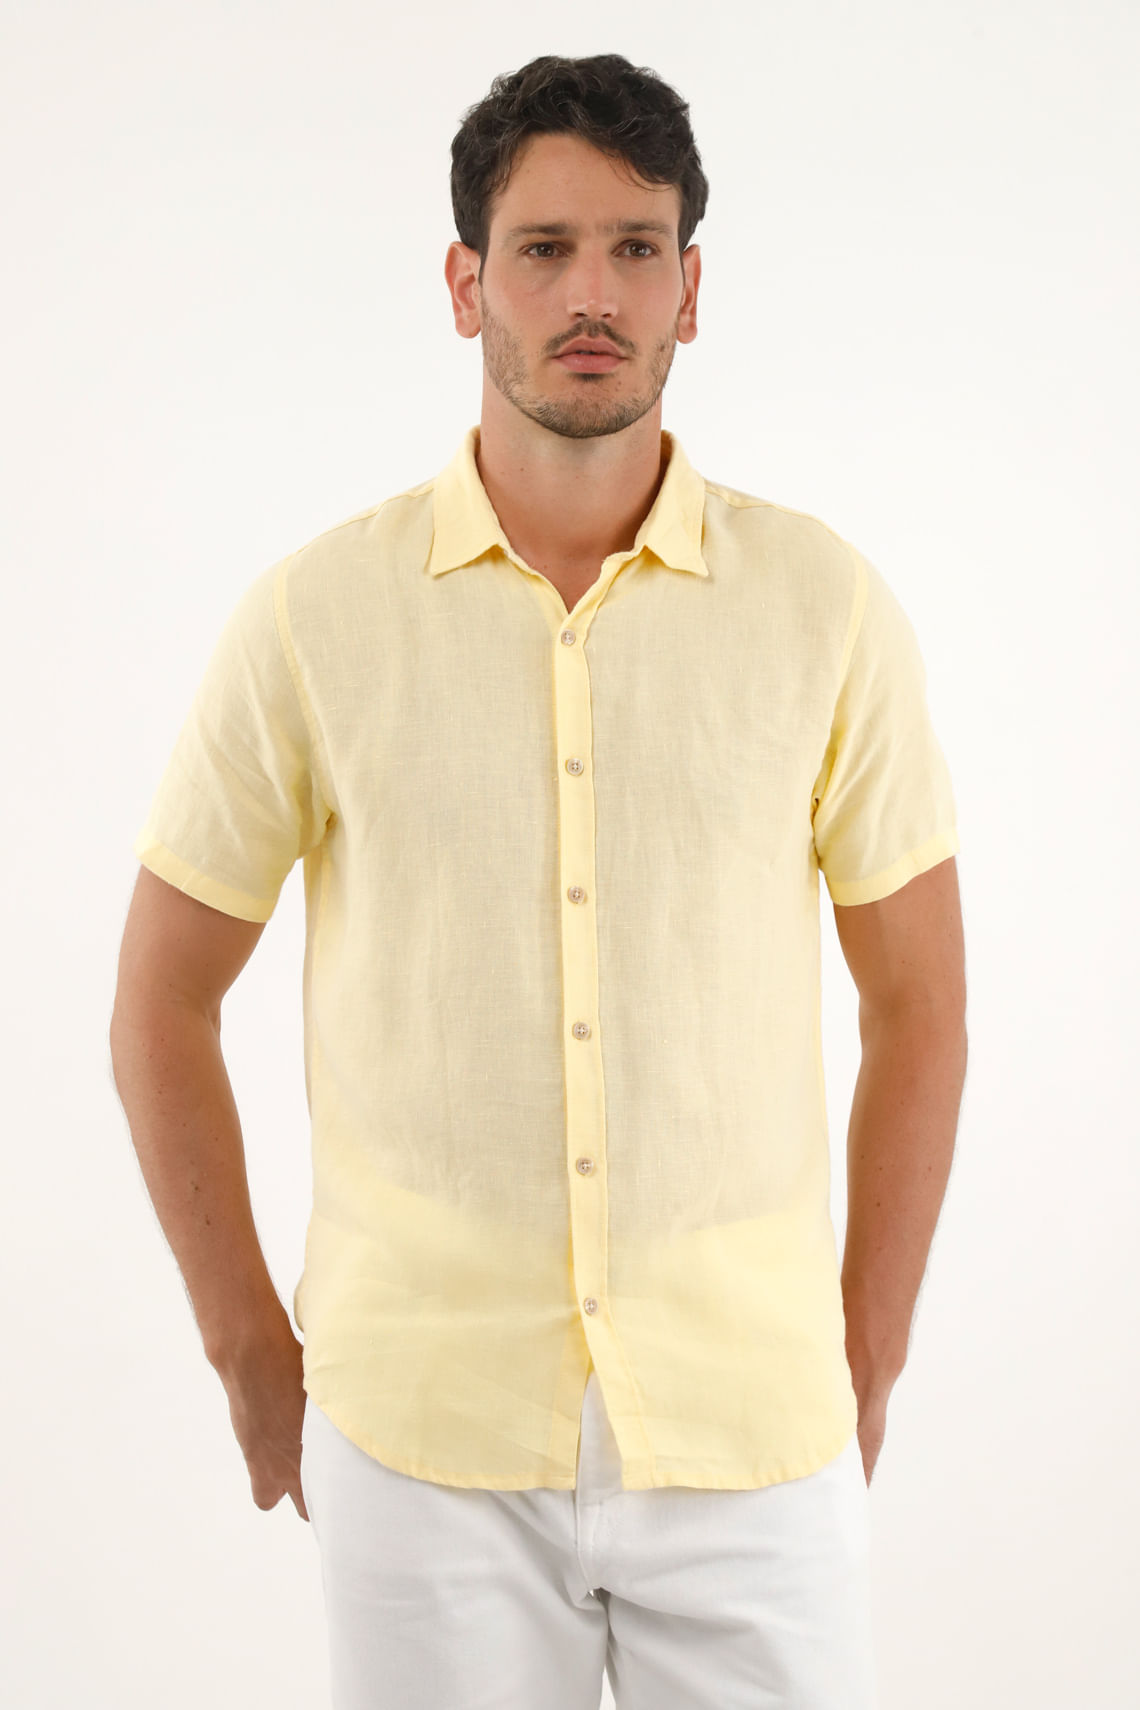 Las mejores ofertas en Camisetas amarillas para hombres